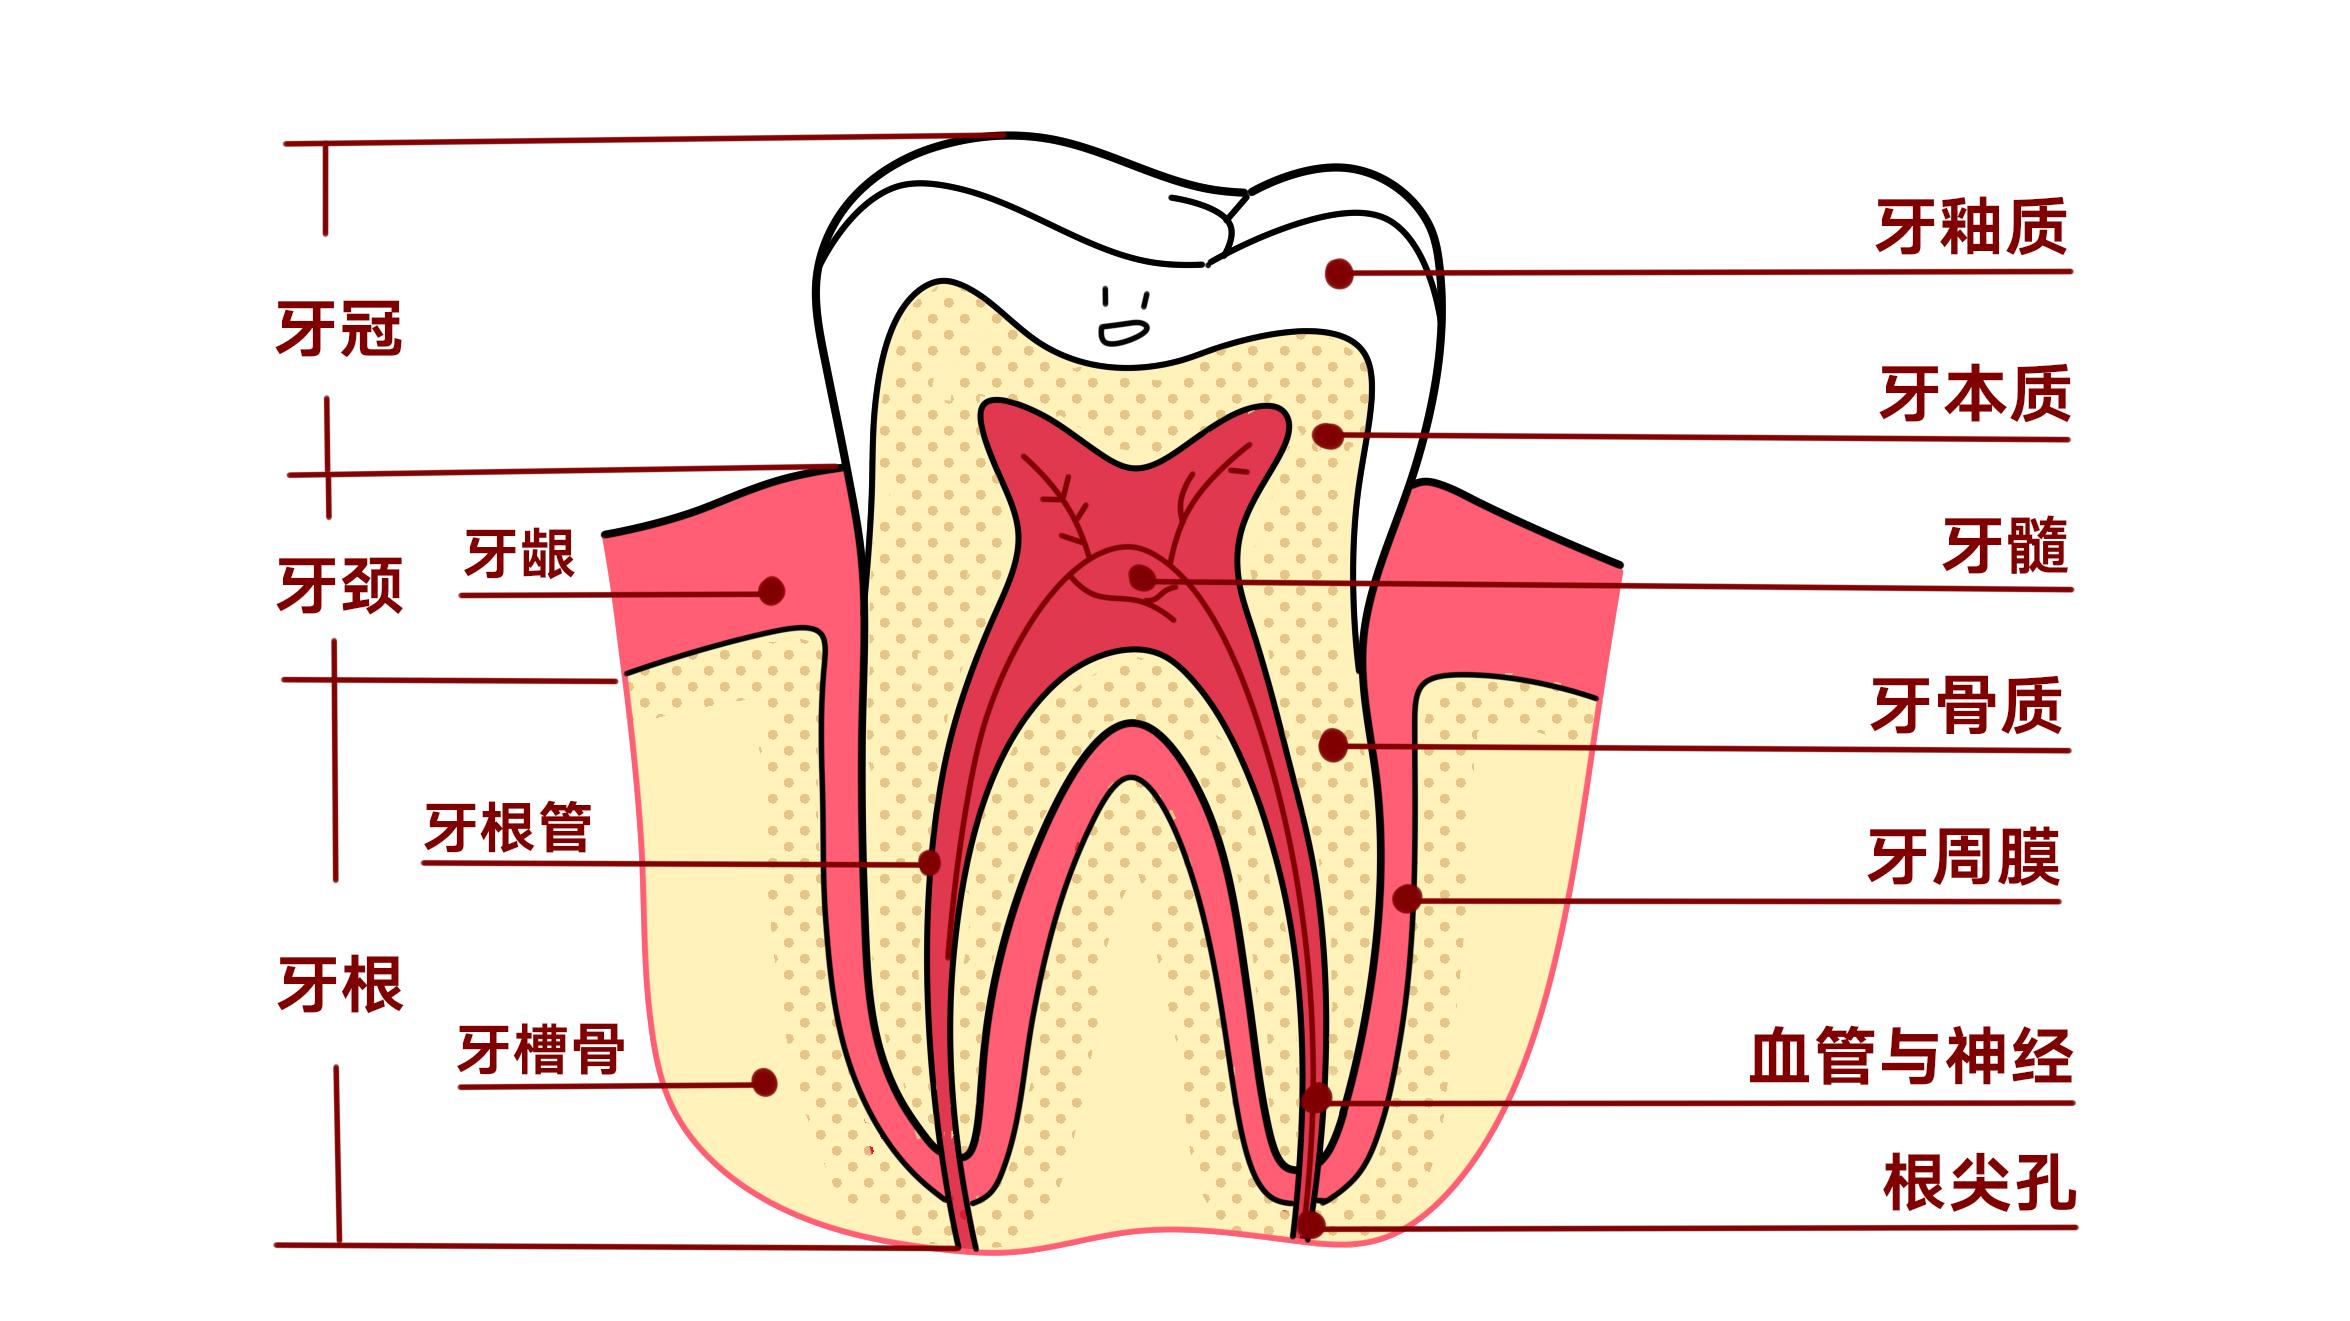 如图所示,小小的一颗牙齿,却有着复杂的结构,从上至下是牙冠,牙颈